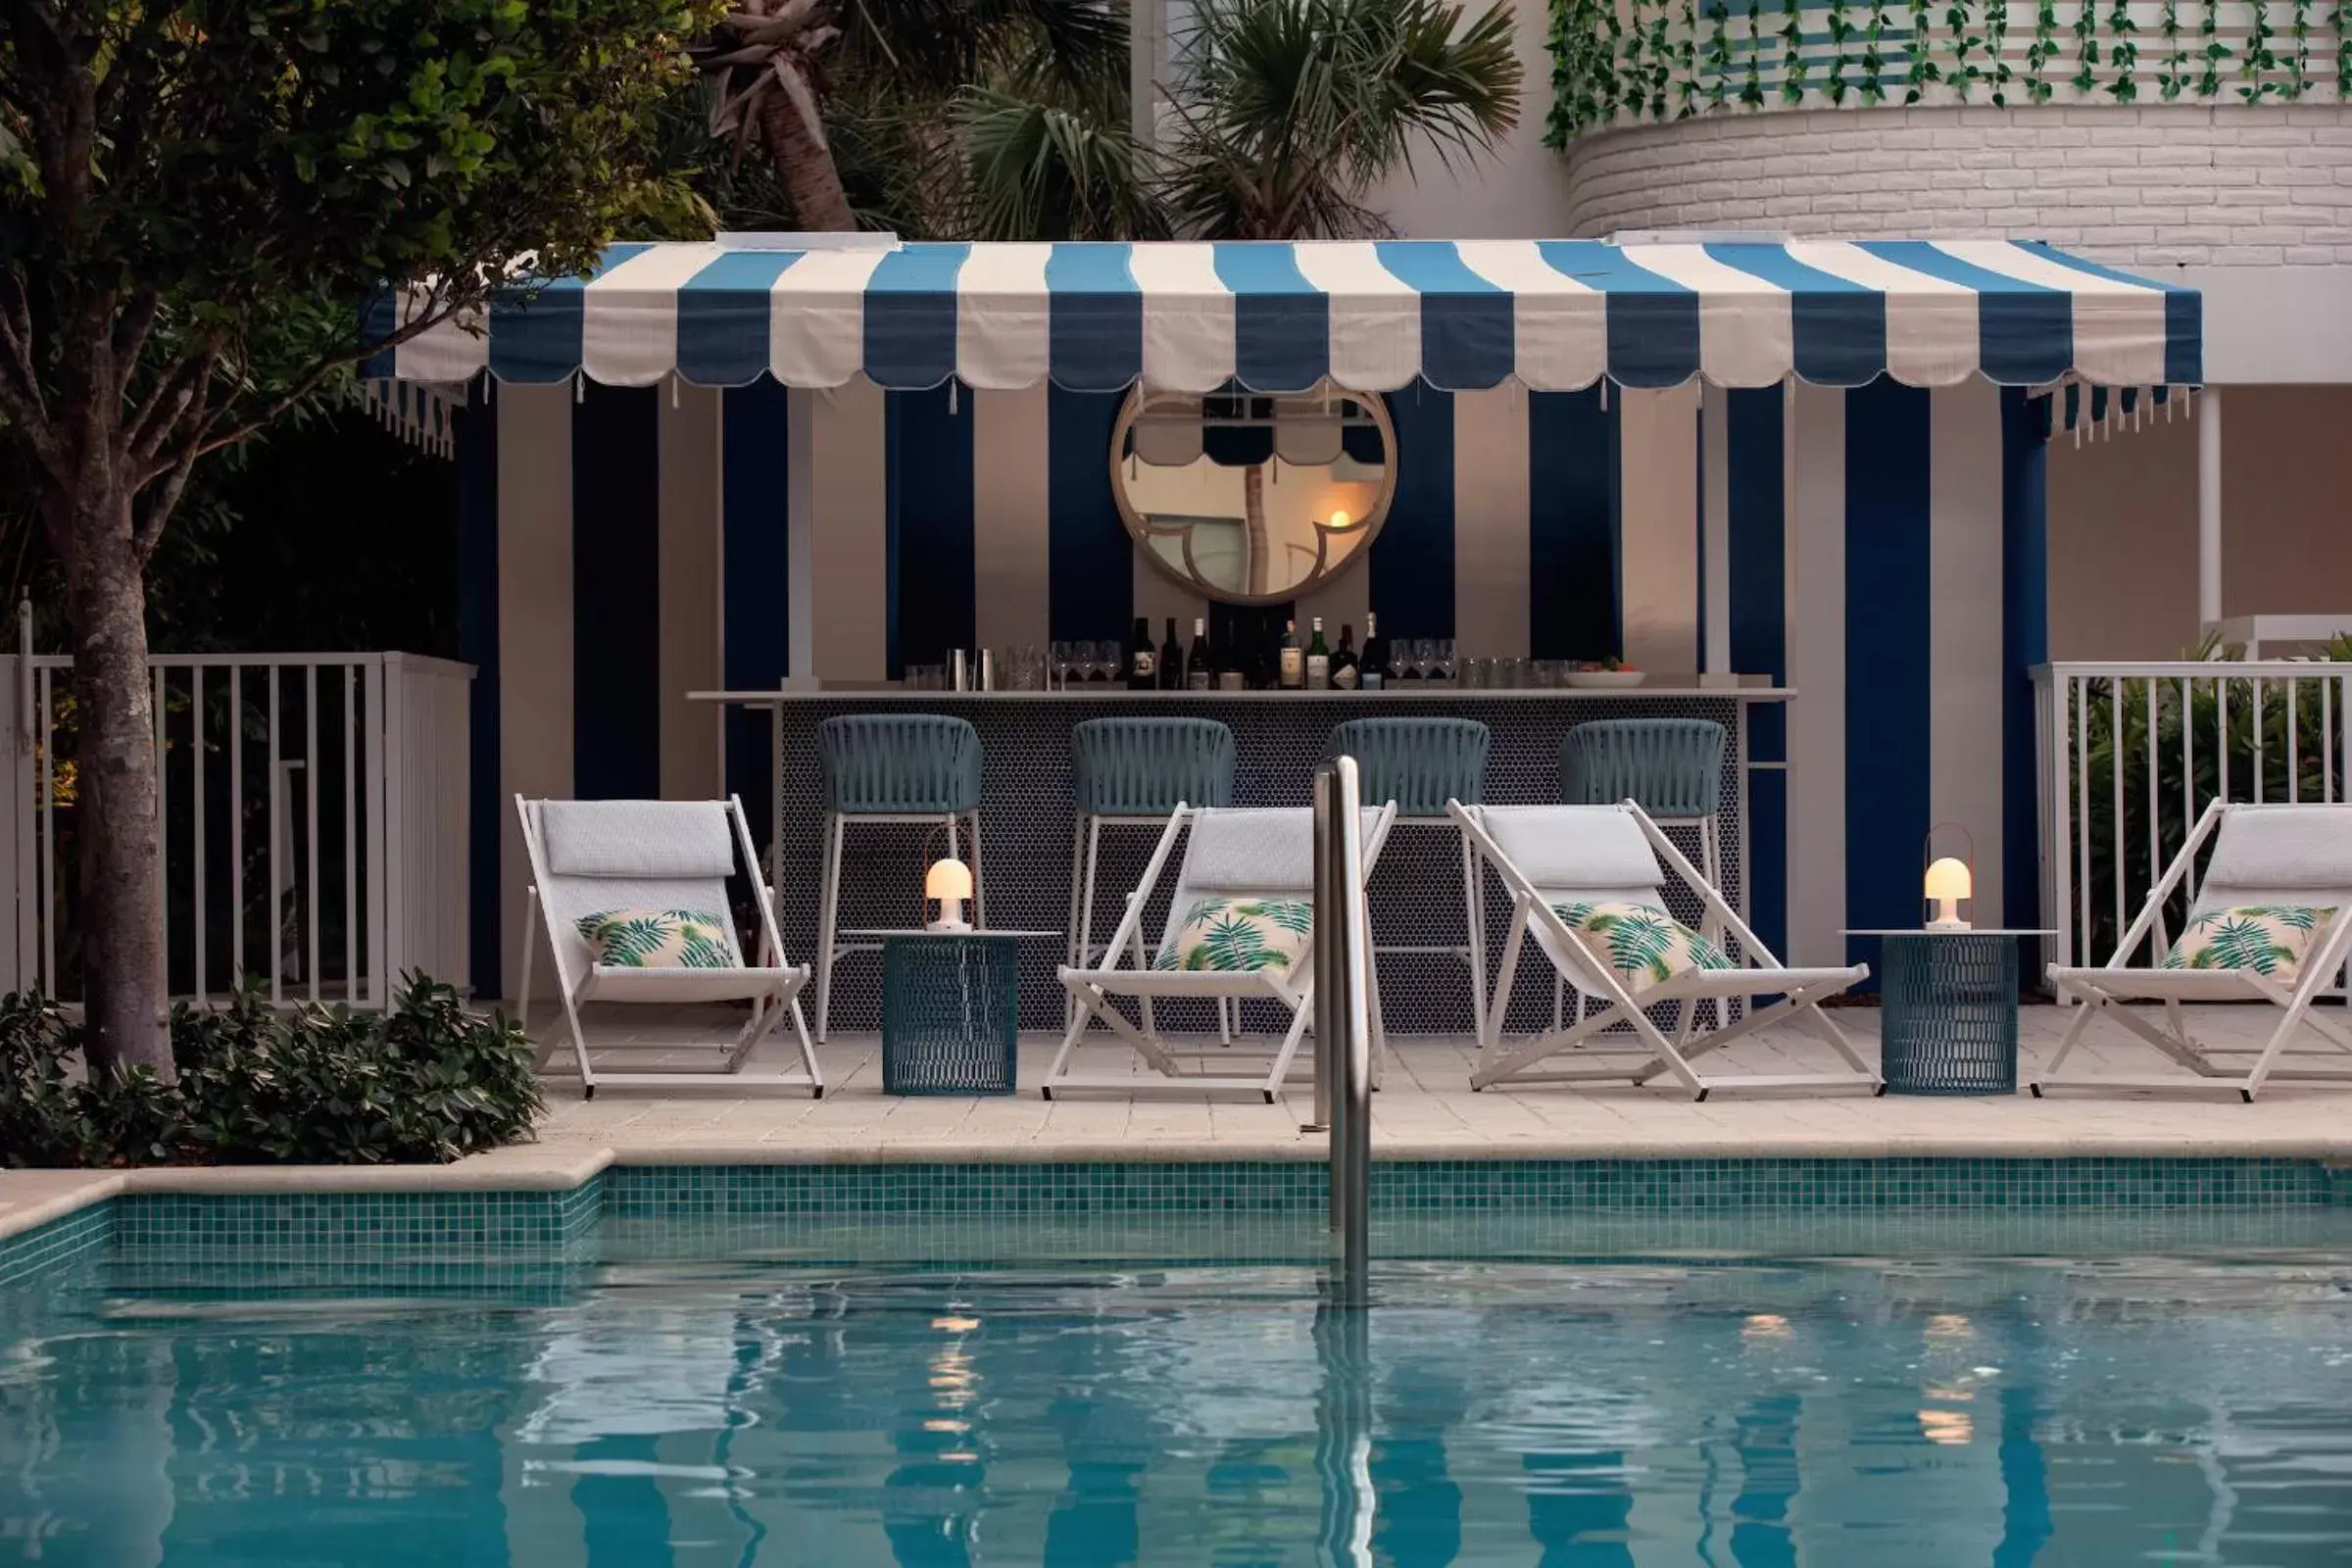 Lounge or bar, Swimming Pool in The Kimpton Shorebreak Fort Lauderdale Beach Resort